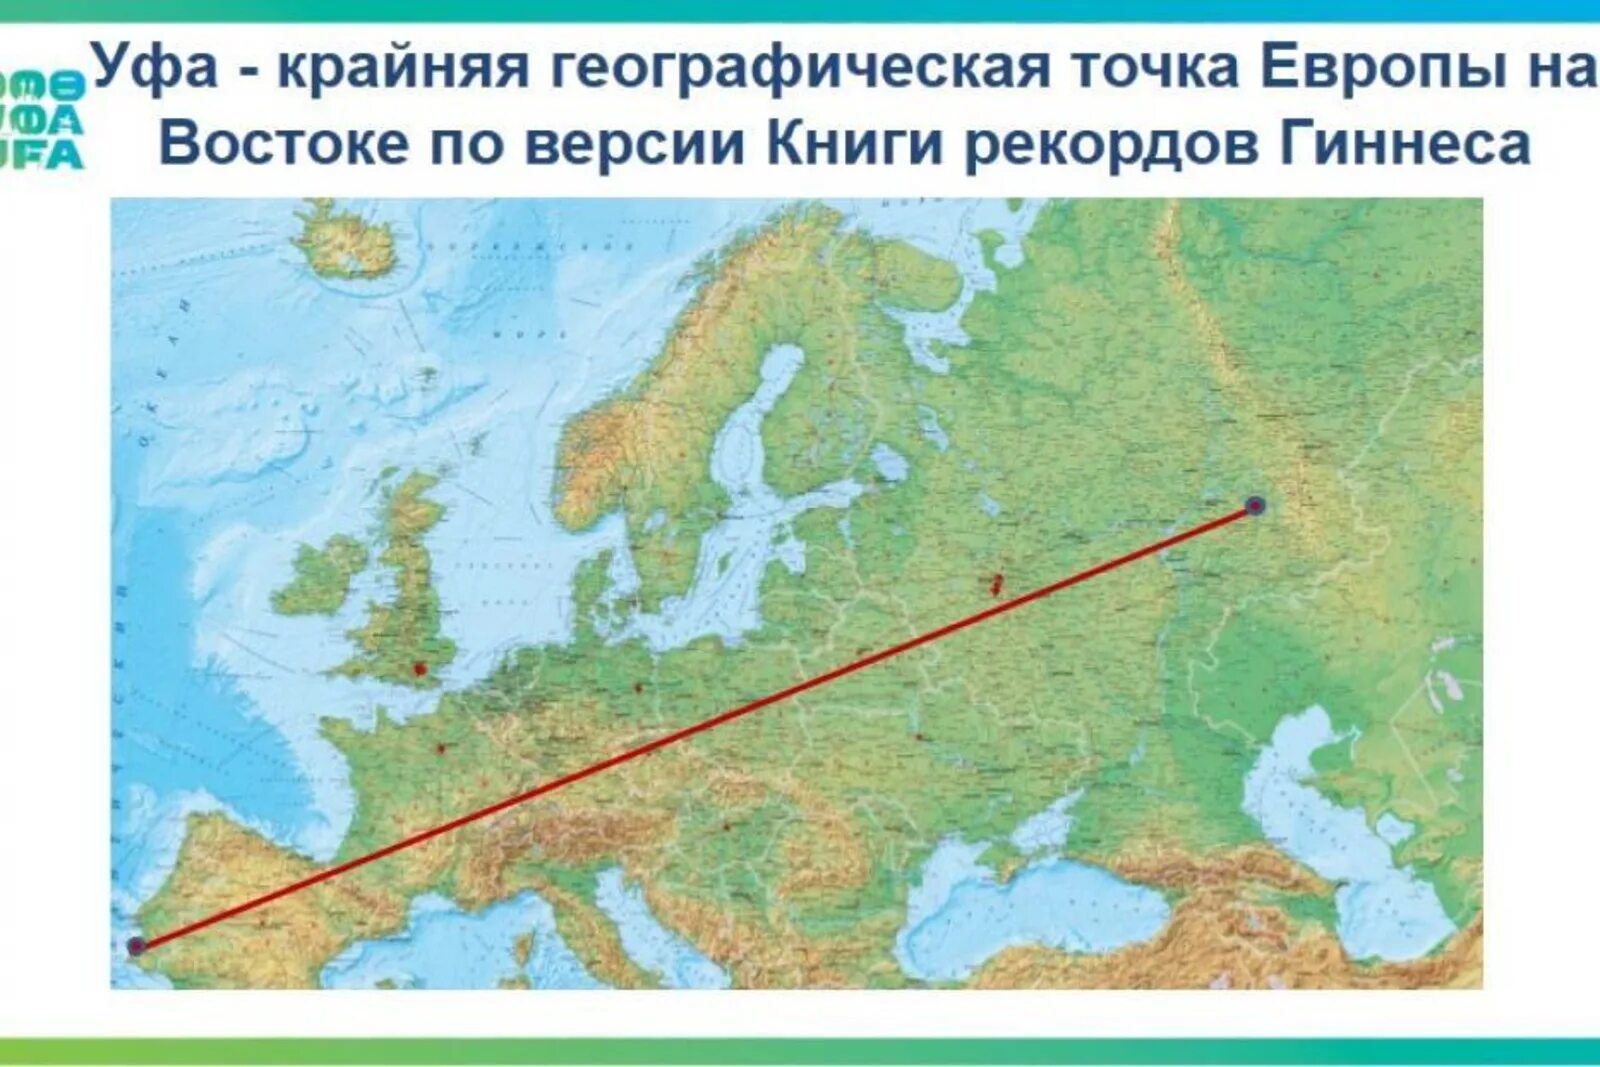 Крайняя западная точка европы. Крайняя Восточная точка Европы. Крайние точки Европы. Самая Восточная точка Европы. Самая крайняя точка Европы.